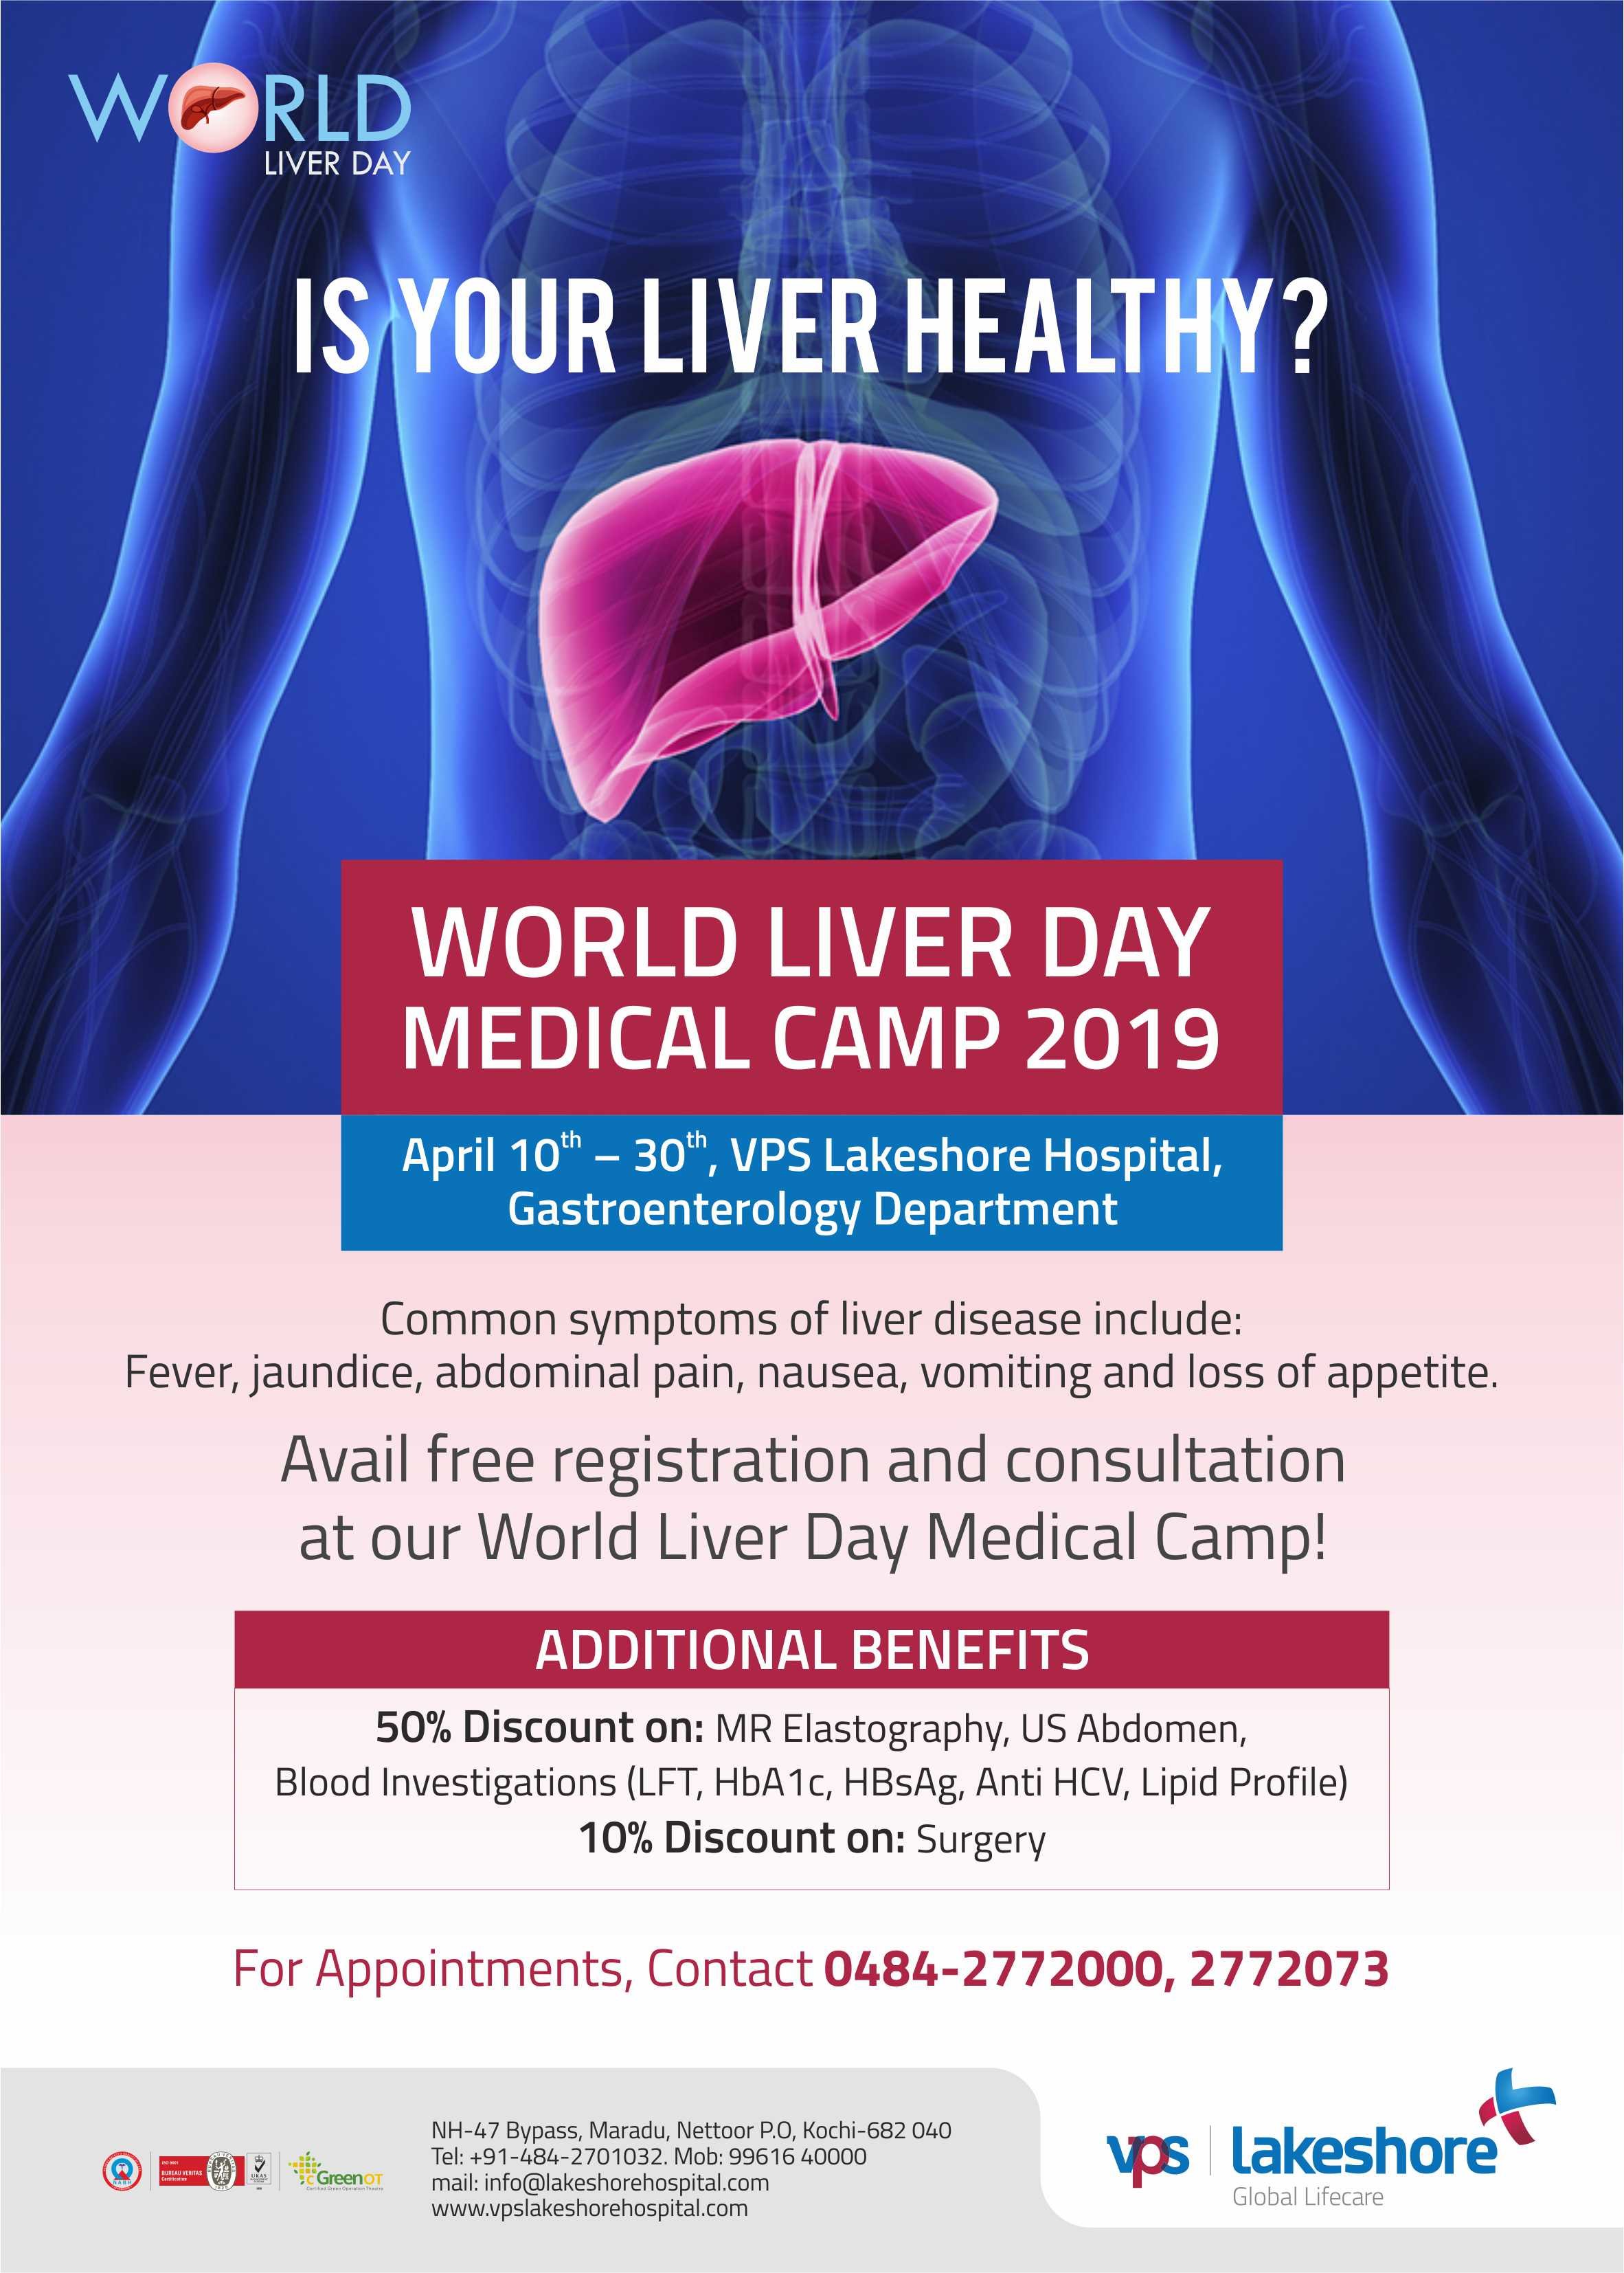 World Liver Day Medical Camp 2019